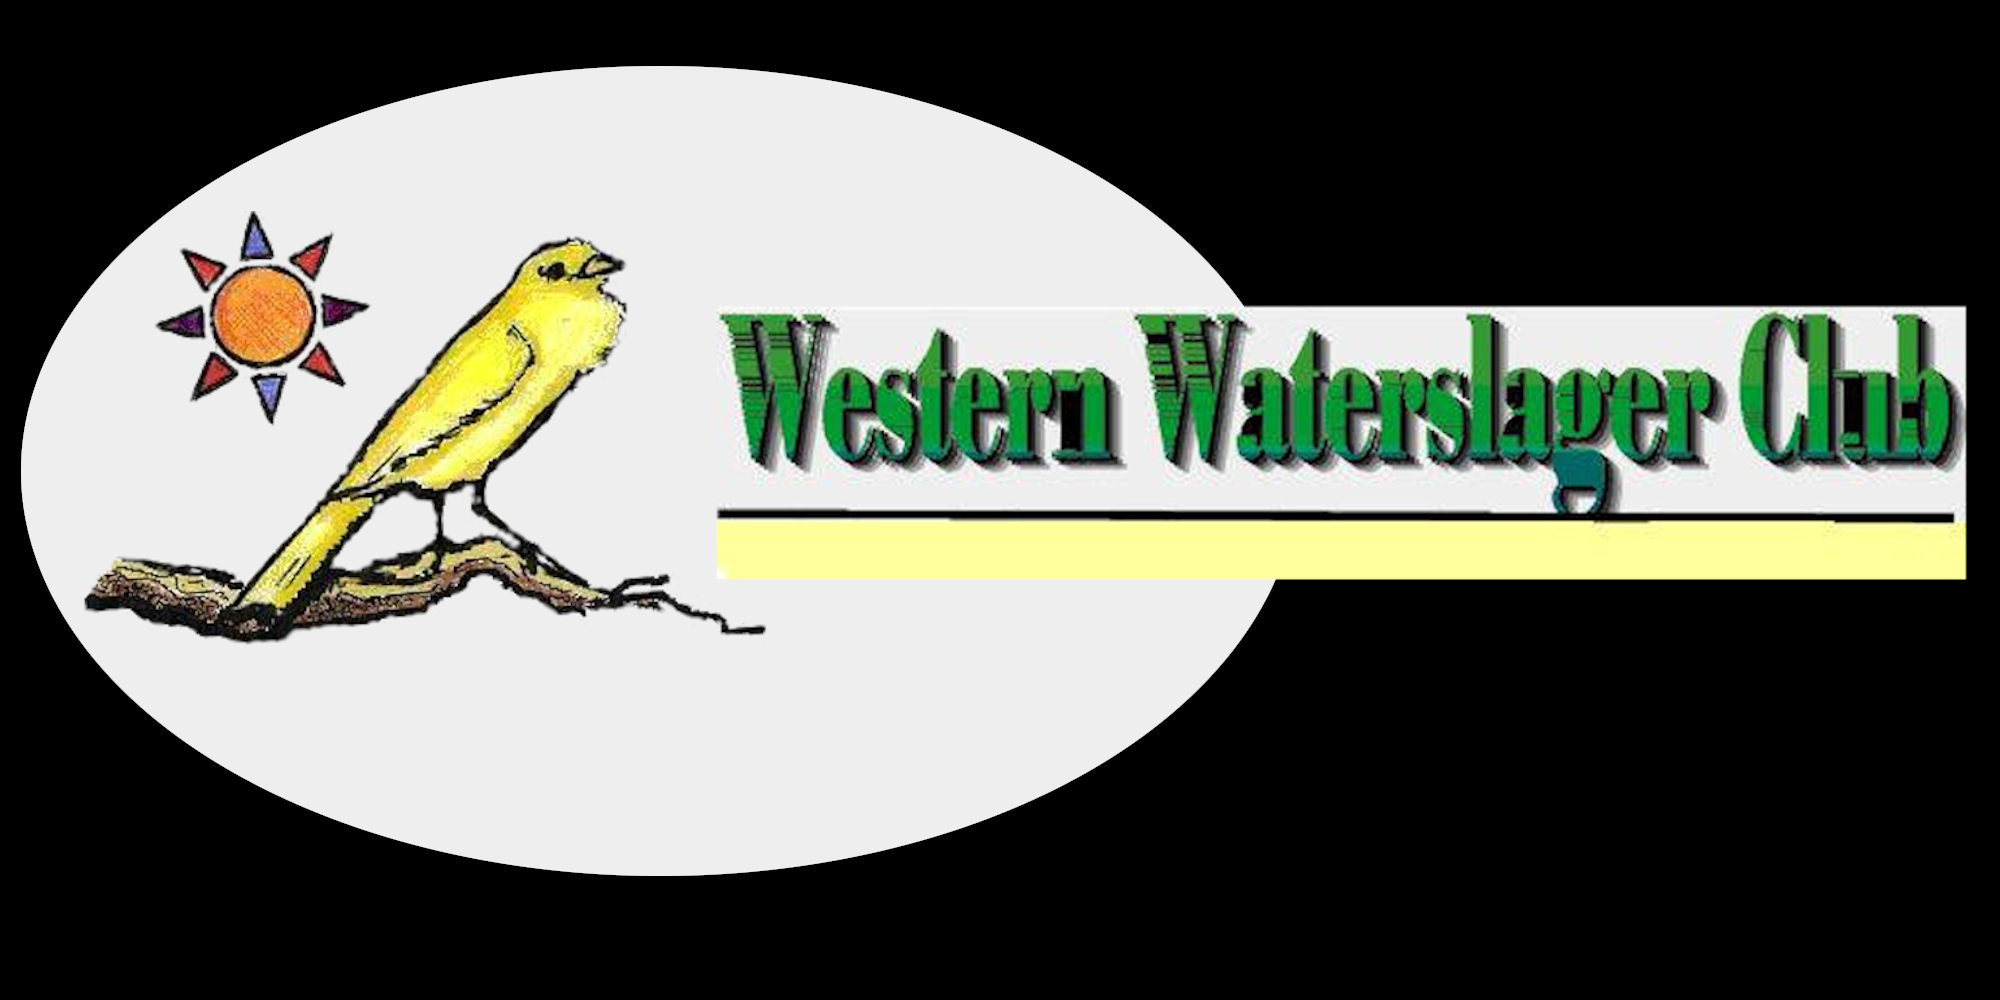 Western Waterslager Club